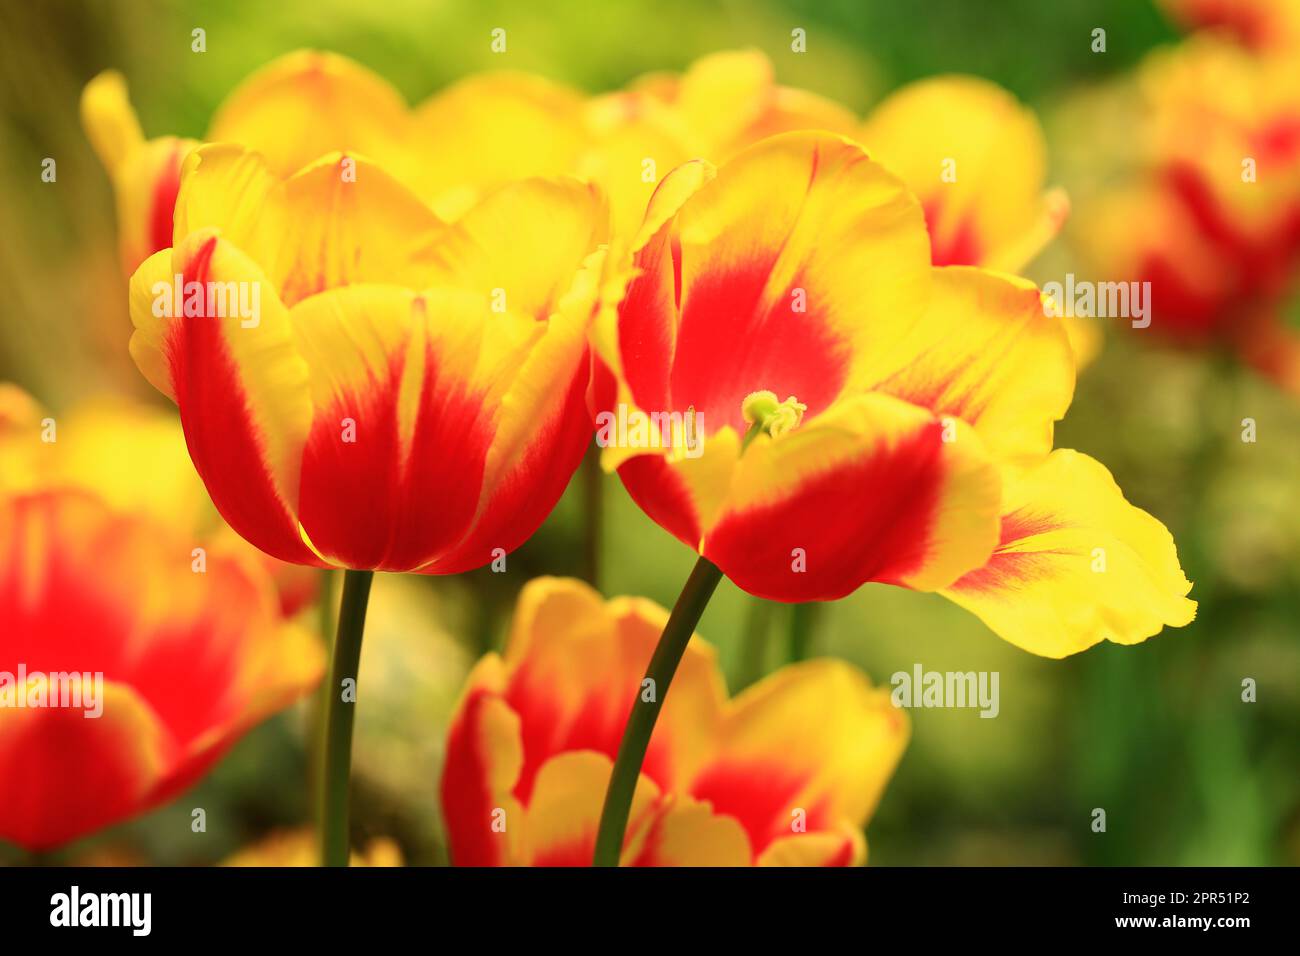 Fiori tulipani colorati in fiore, primo piano di bel rosso con fiori tulipani gialli in fiore nel giardino Foto Stock